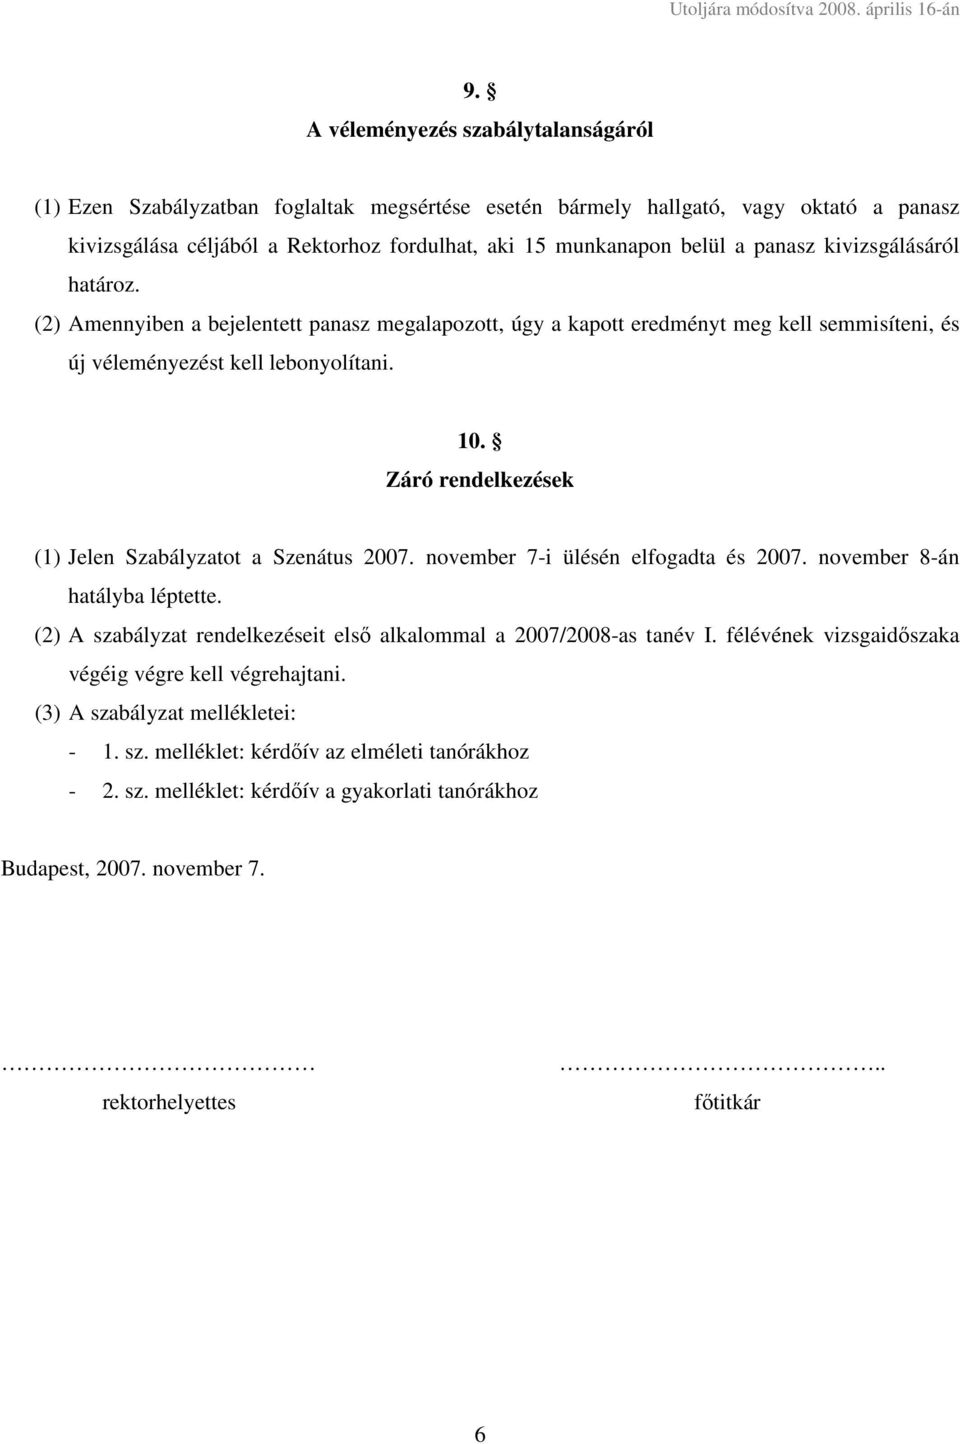 Záró rendelkezések (1) Jelen Szabályzatot a Szenátus 2007. november 7-i ülésén elfogadta és 2007. november 8-án hatályba léptette.